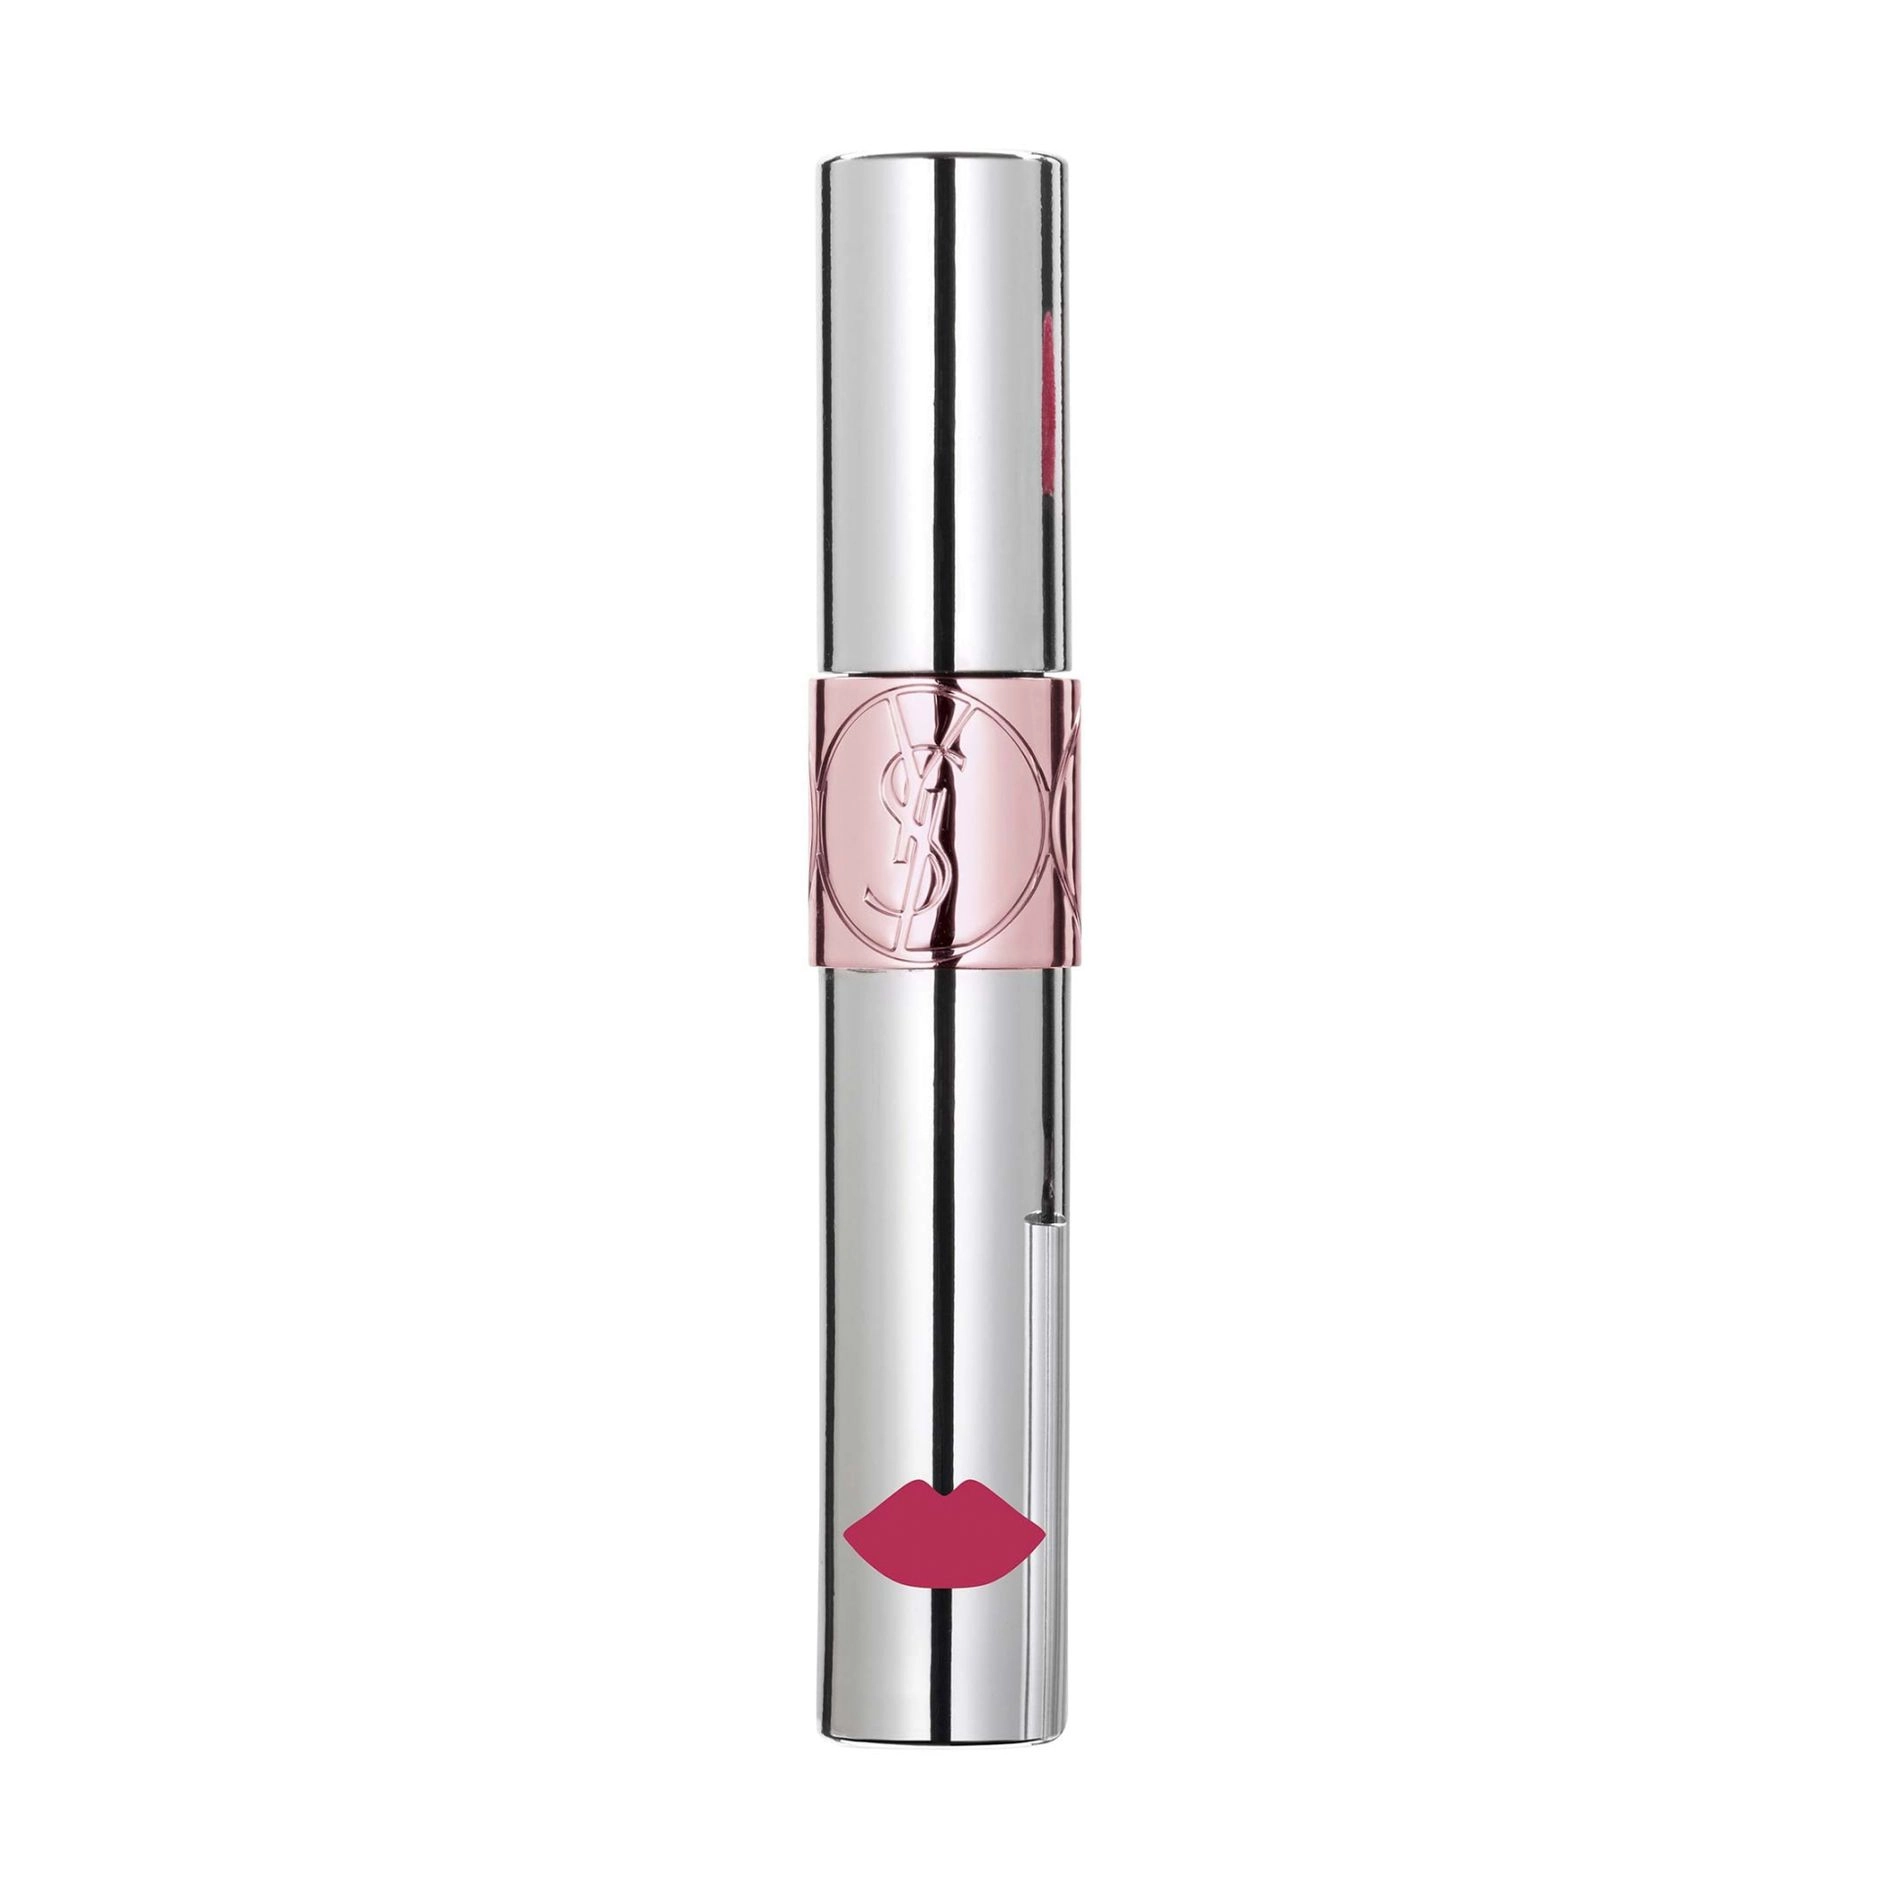 Yves Saint Laurent Відтінковий бальзам для губ Volupte Liquid Colour Balm 08 Excite Me Pink, 6 мл - фото N1